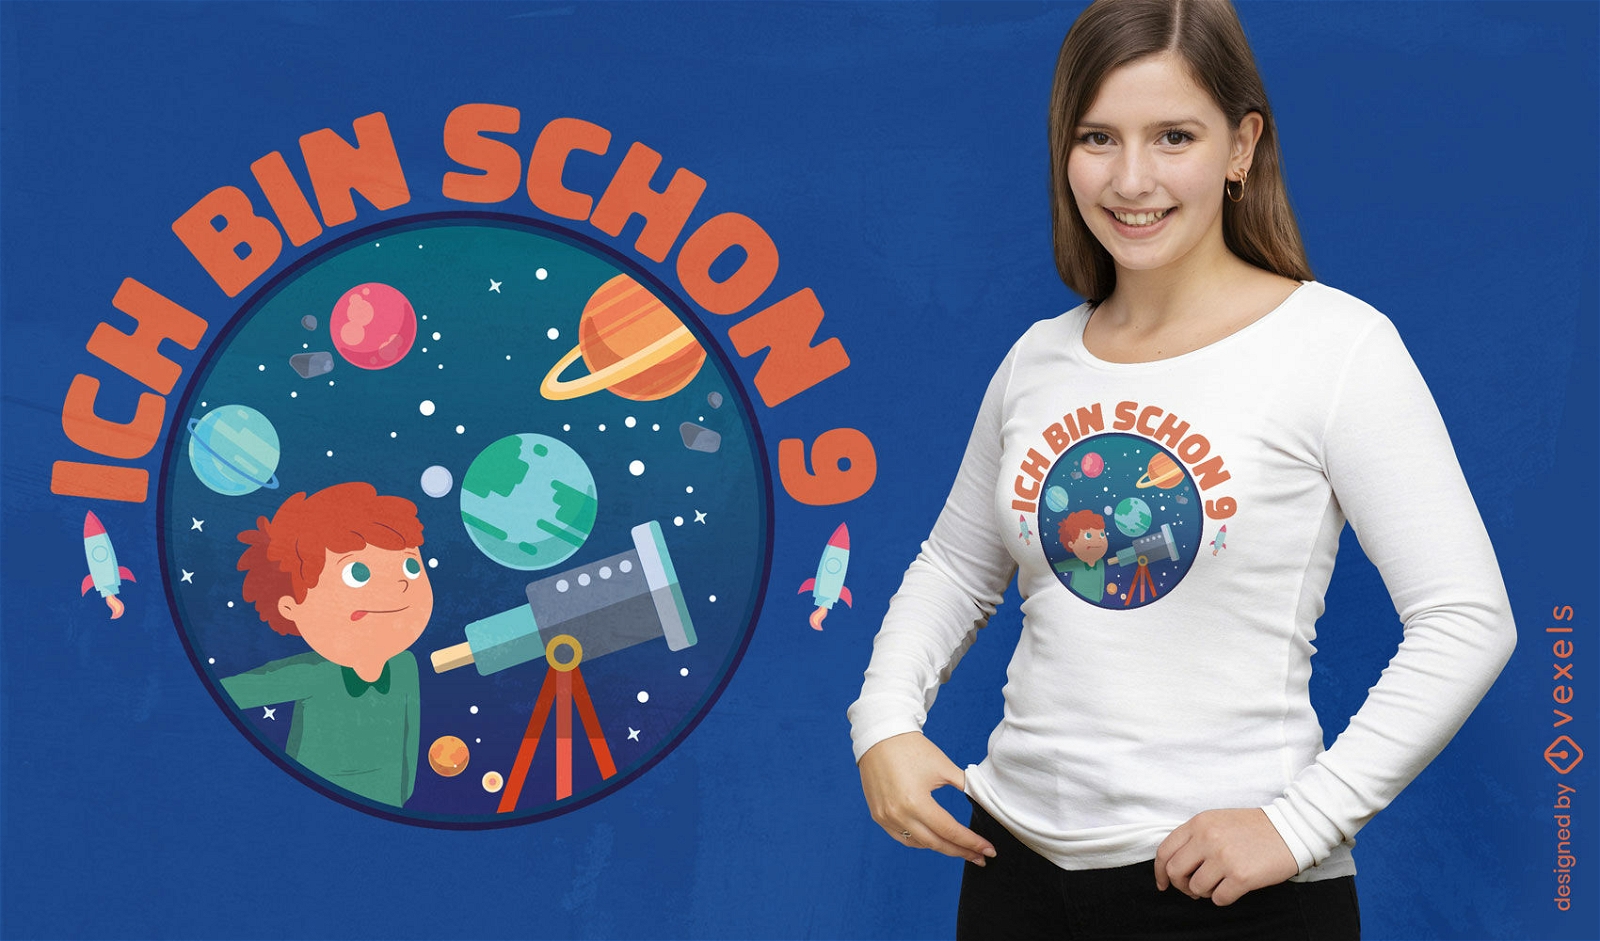 Telescope kid birthday t-shirt design